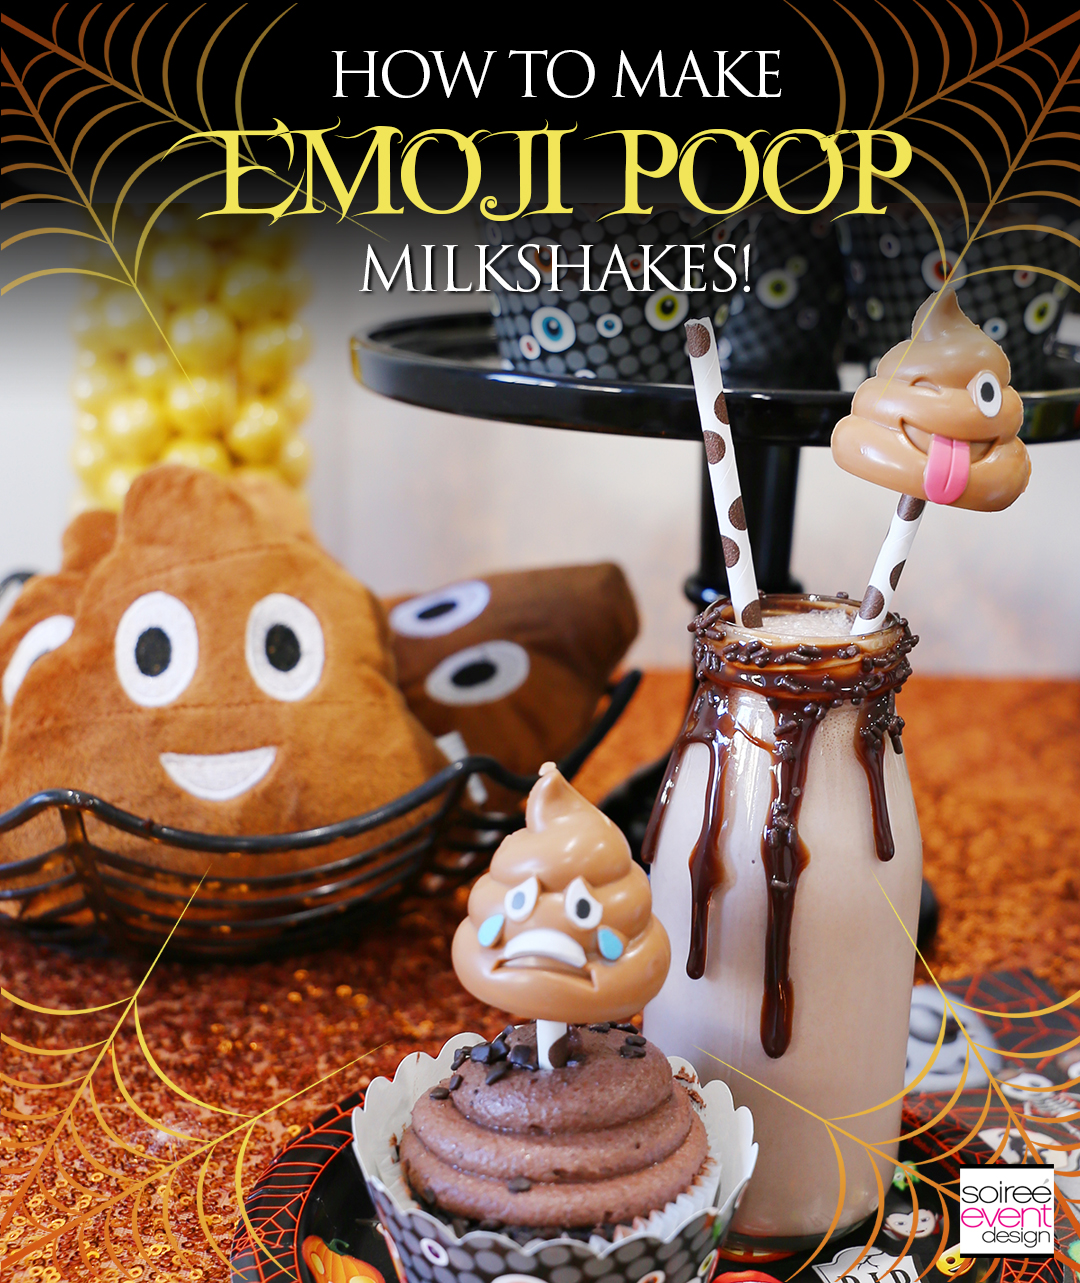 Poop Emoji Milkshakes